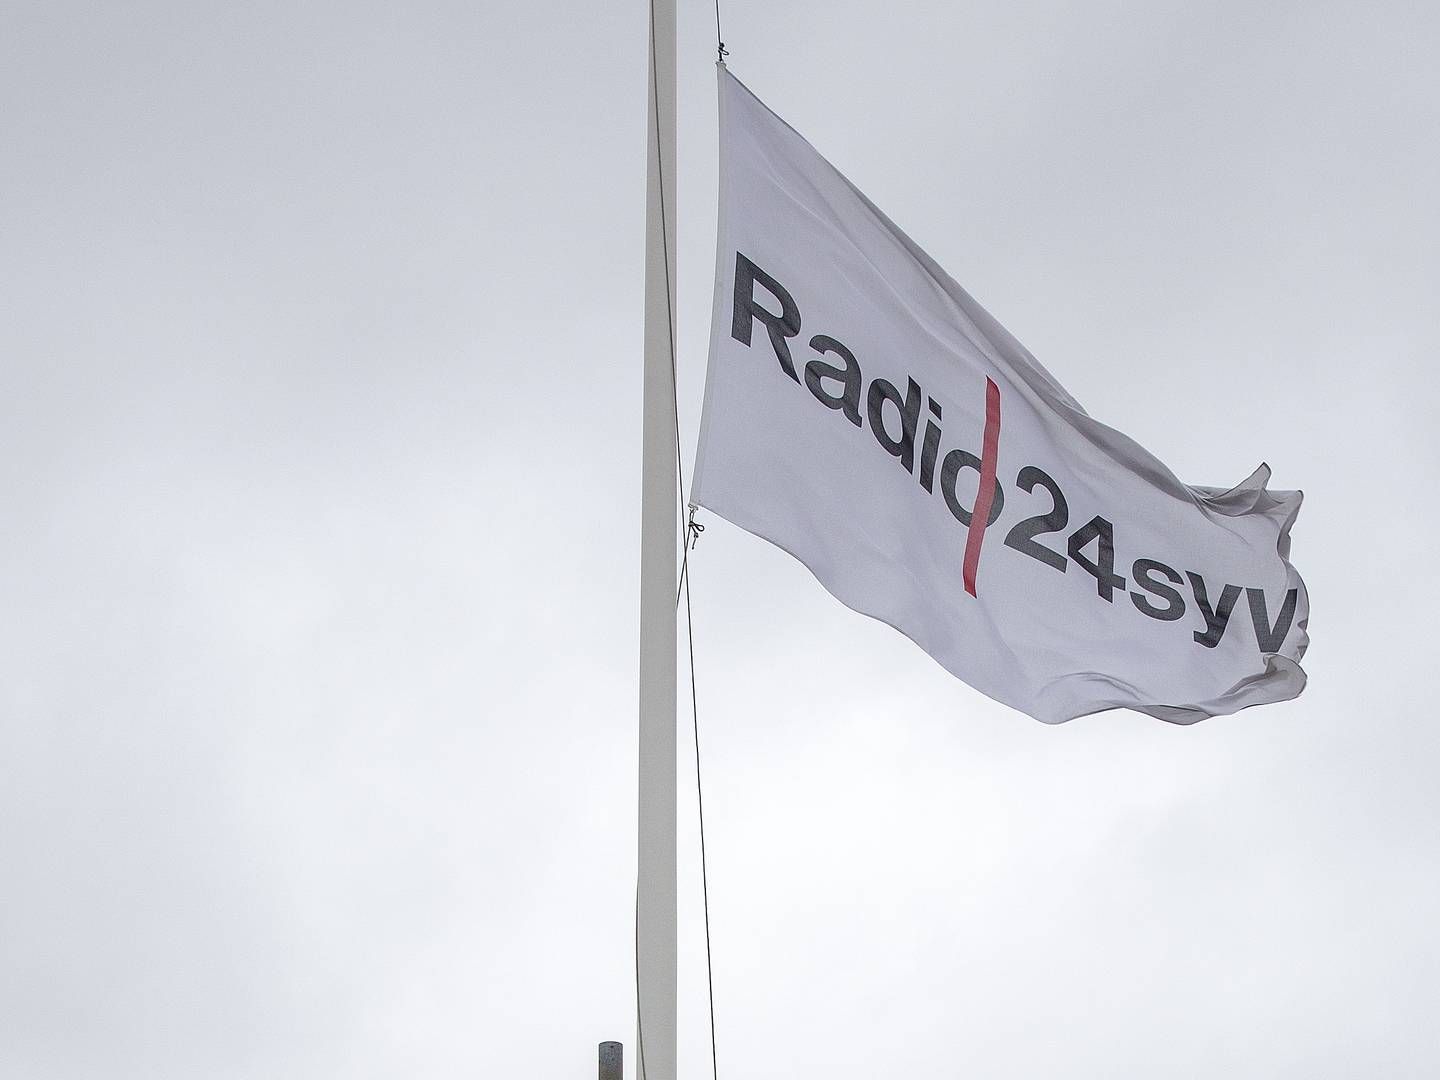 Da Radio24syv fik at vide, at radioen lukker, rejste Mikael Bertelsen flaget på halvt. | Foto: Peter Hove Olesen/Ritzau Scanpix